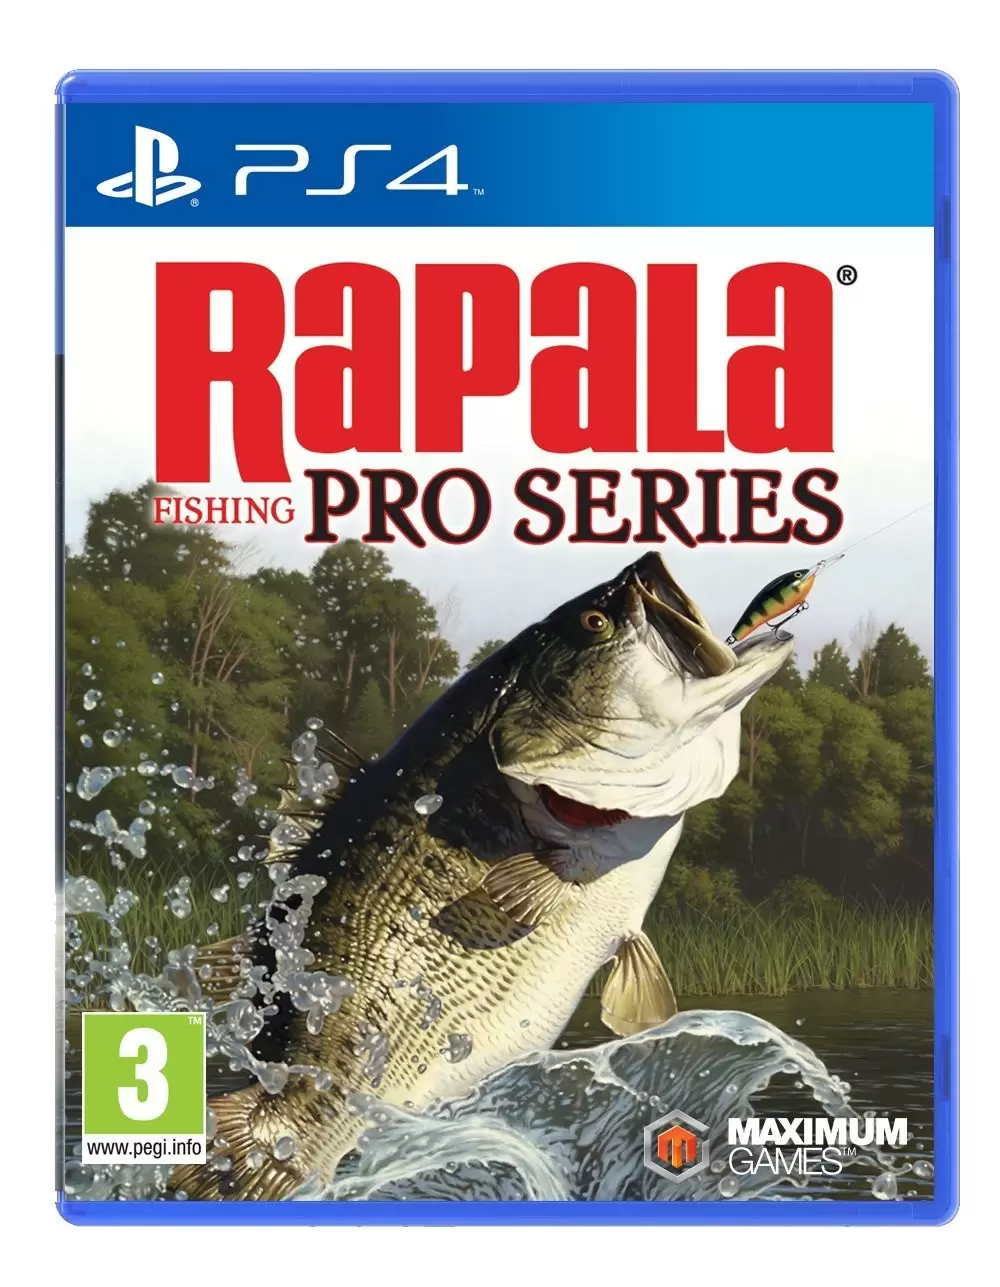 PS4 Games - Rapala Fishing Pro Series